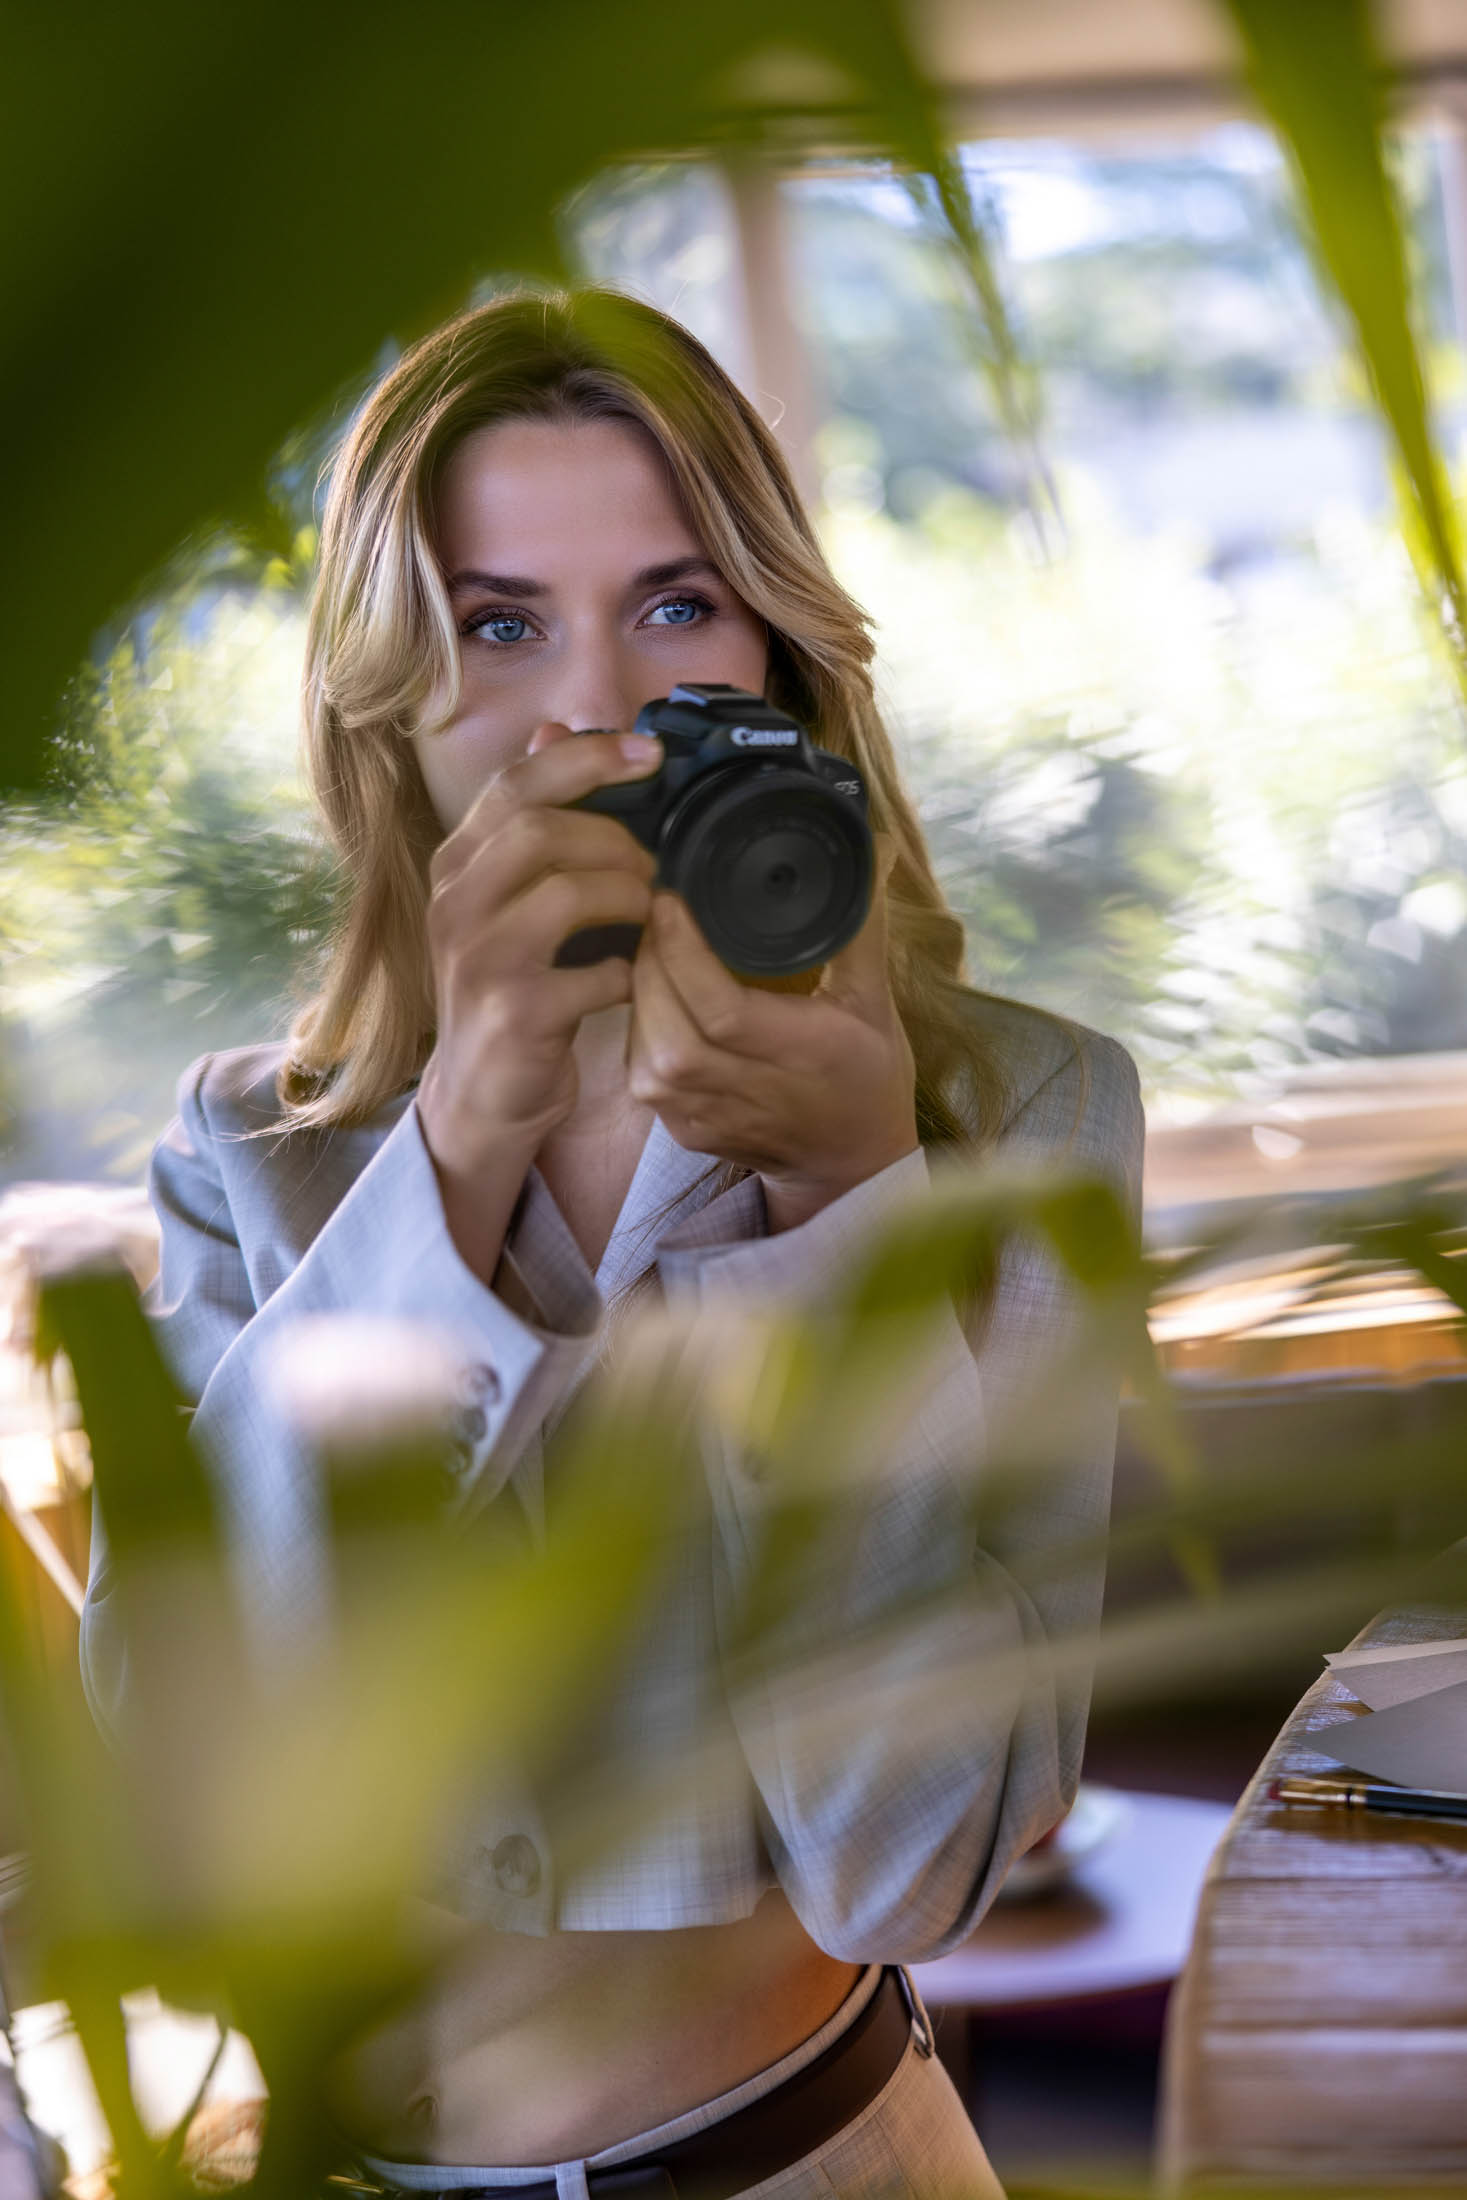 Eine Frau mit blondem Haar hält eine Canon-Kamera in der Hand und ist bereit, ein Foto zu schießen. Sie lugt durch das grüne Laub in einem gut beleuchteten Raum. Sie trägt einen Business-Anzug und hat konzentrierte, aufmerksame blaue Augen. © Fotografie Tomas Rodriguez